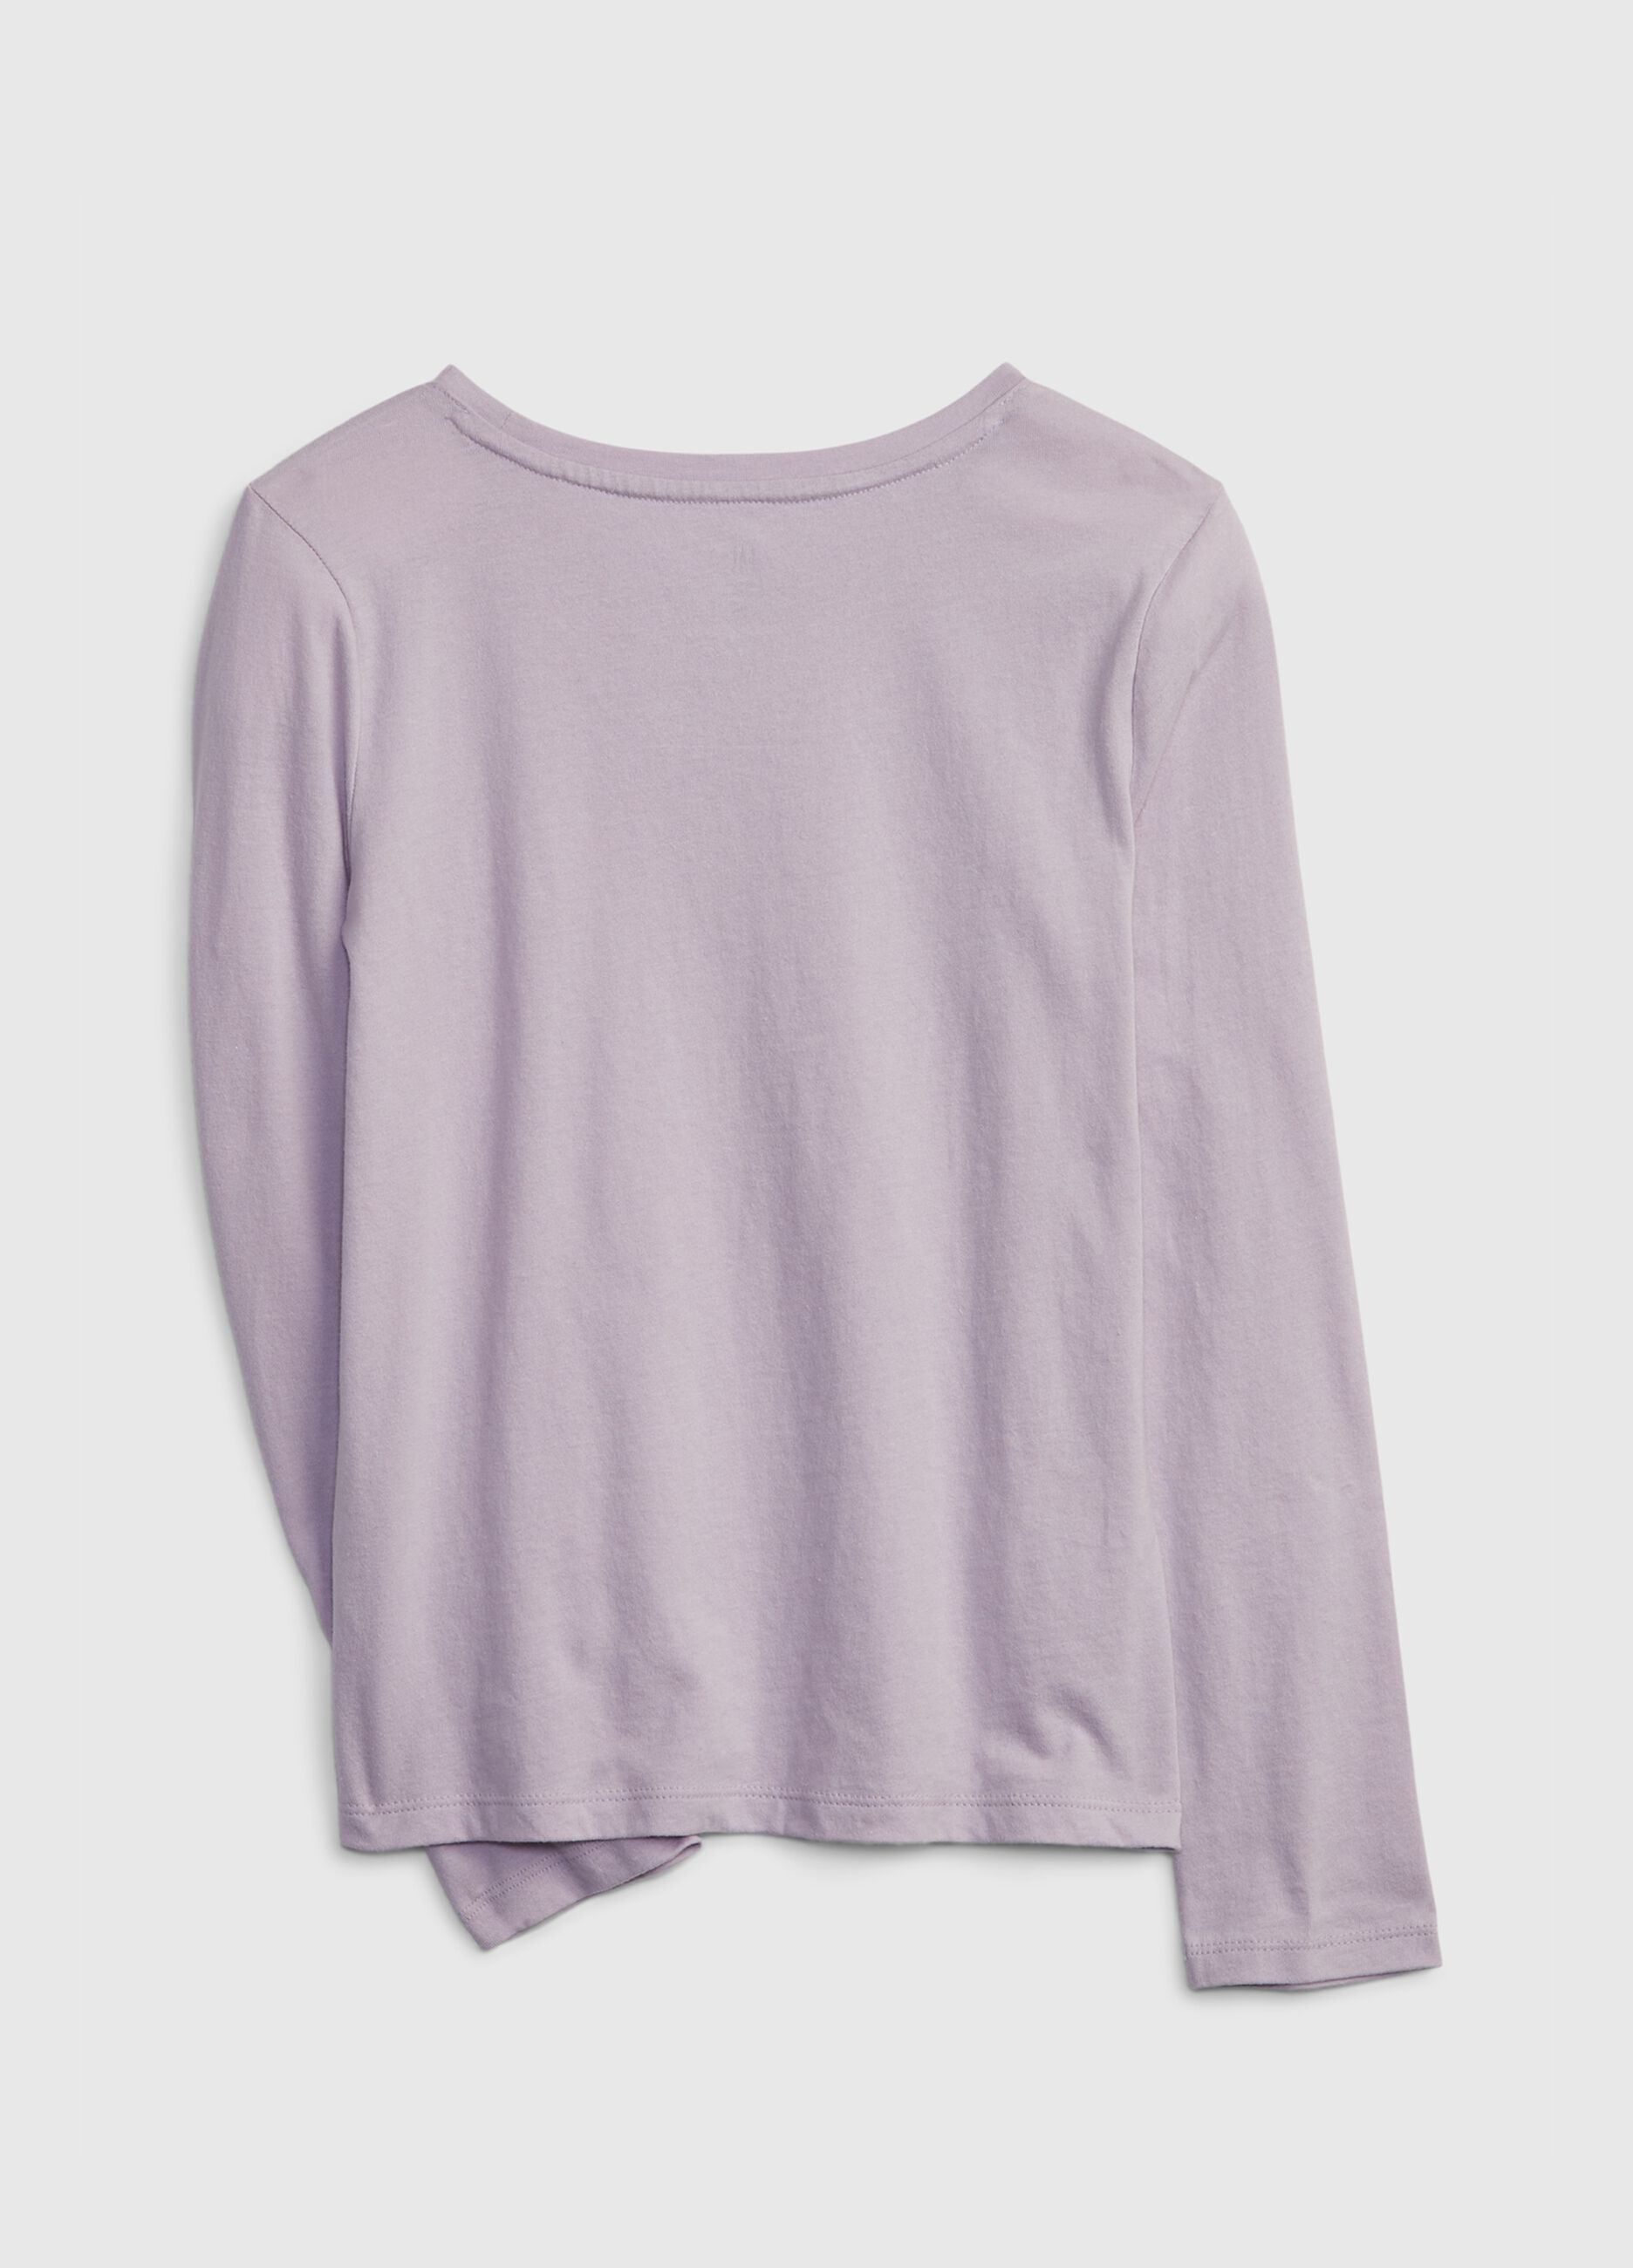 Camiseta logo estampado purpurina